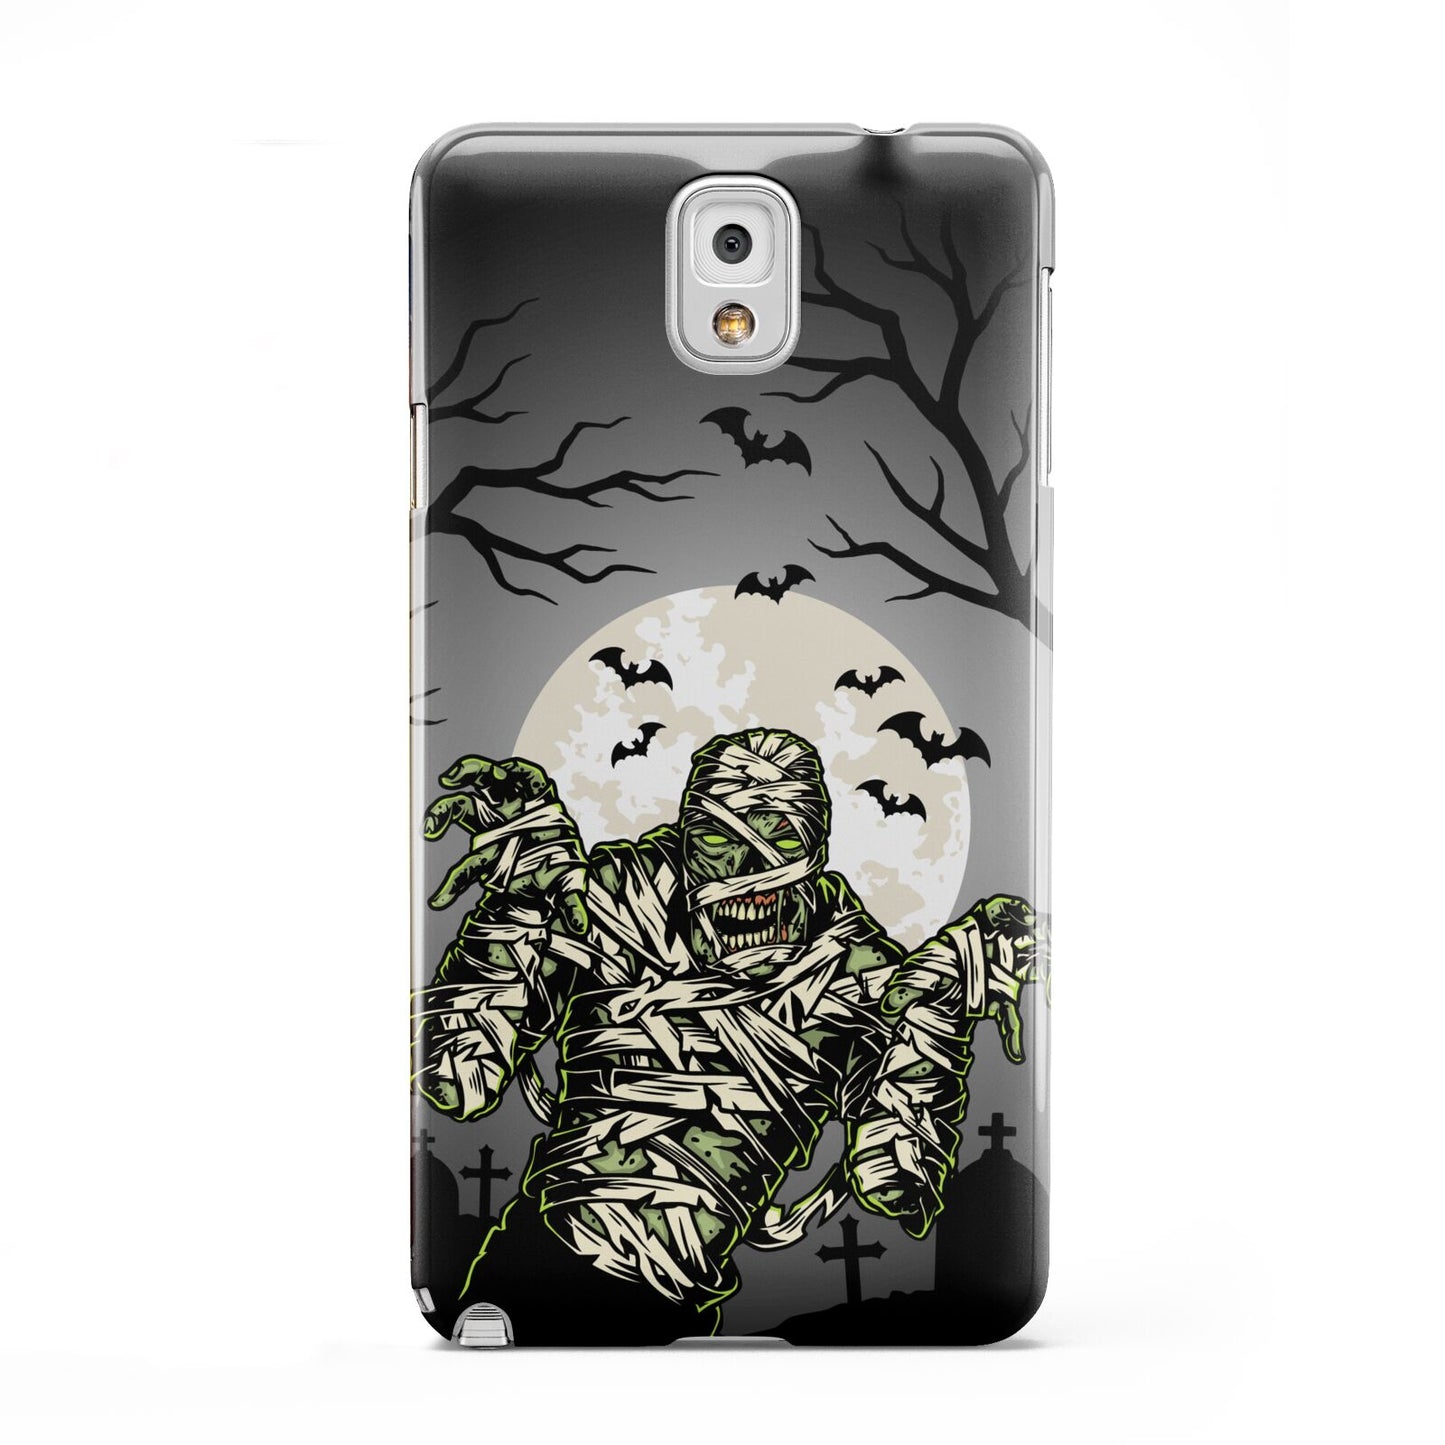 Halloween Mummy Samsung Galaxy Note 3 Case